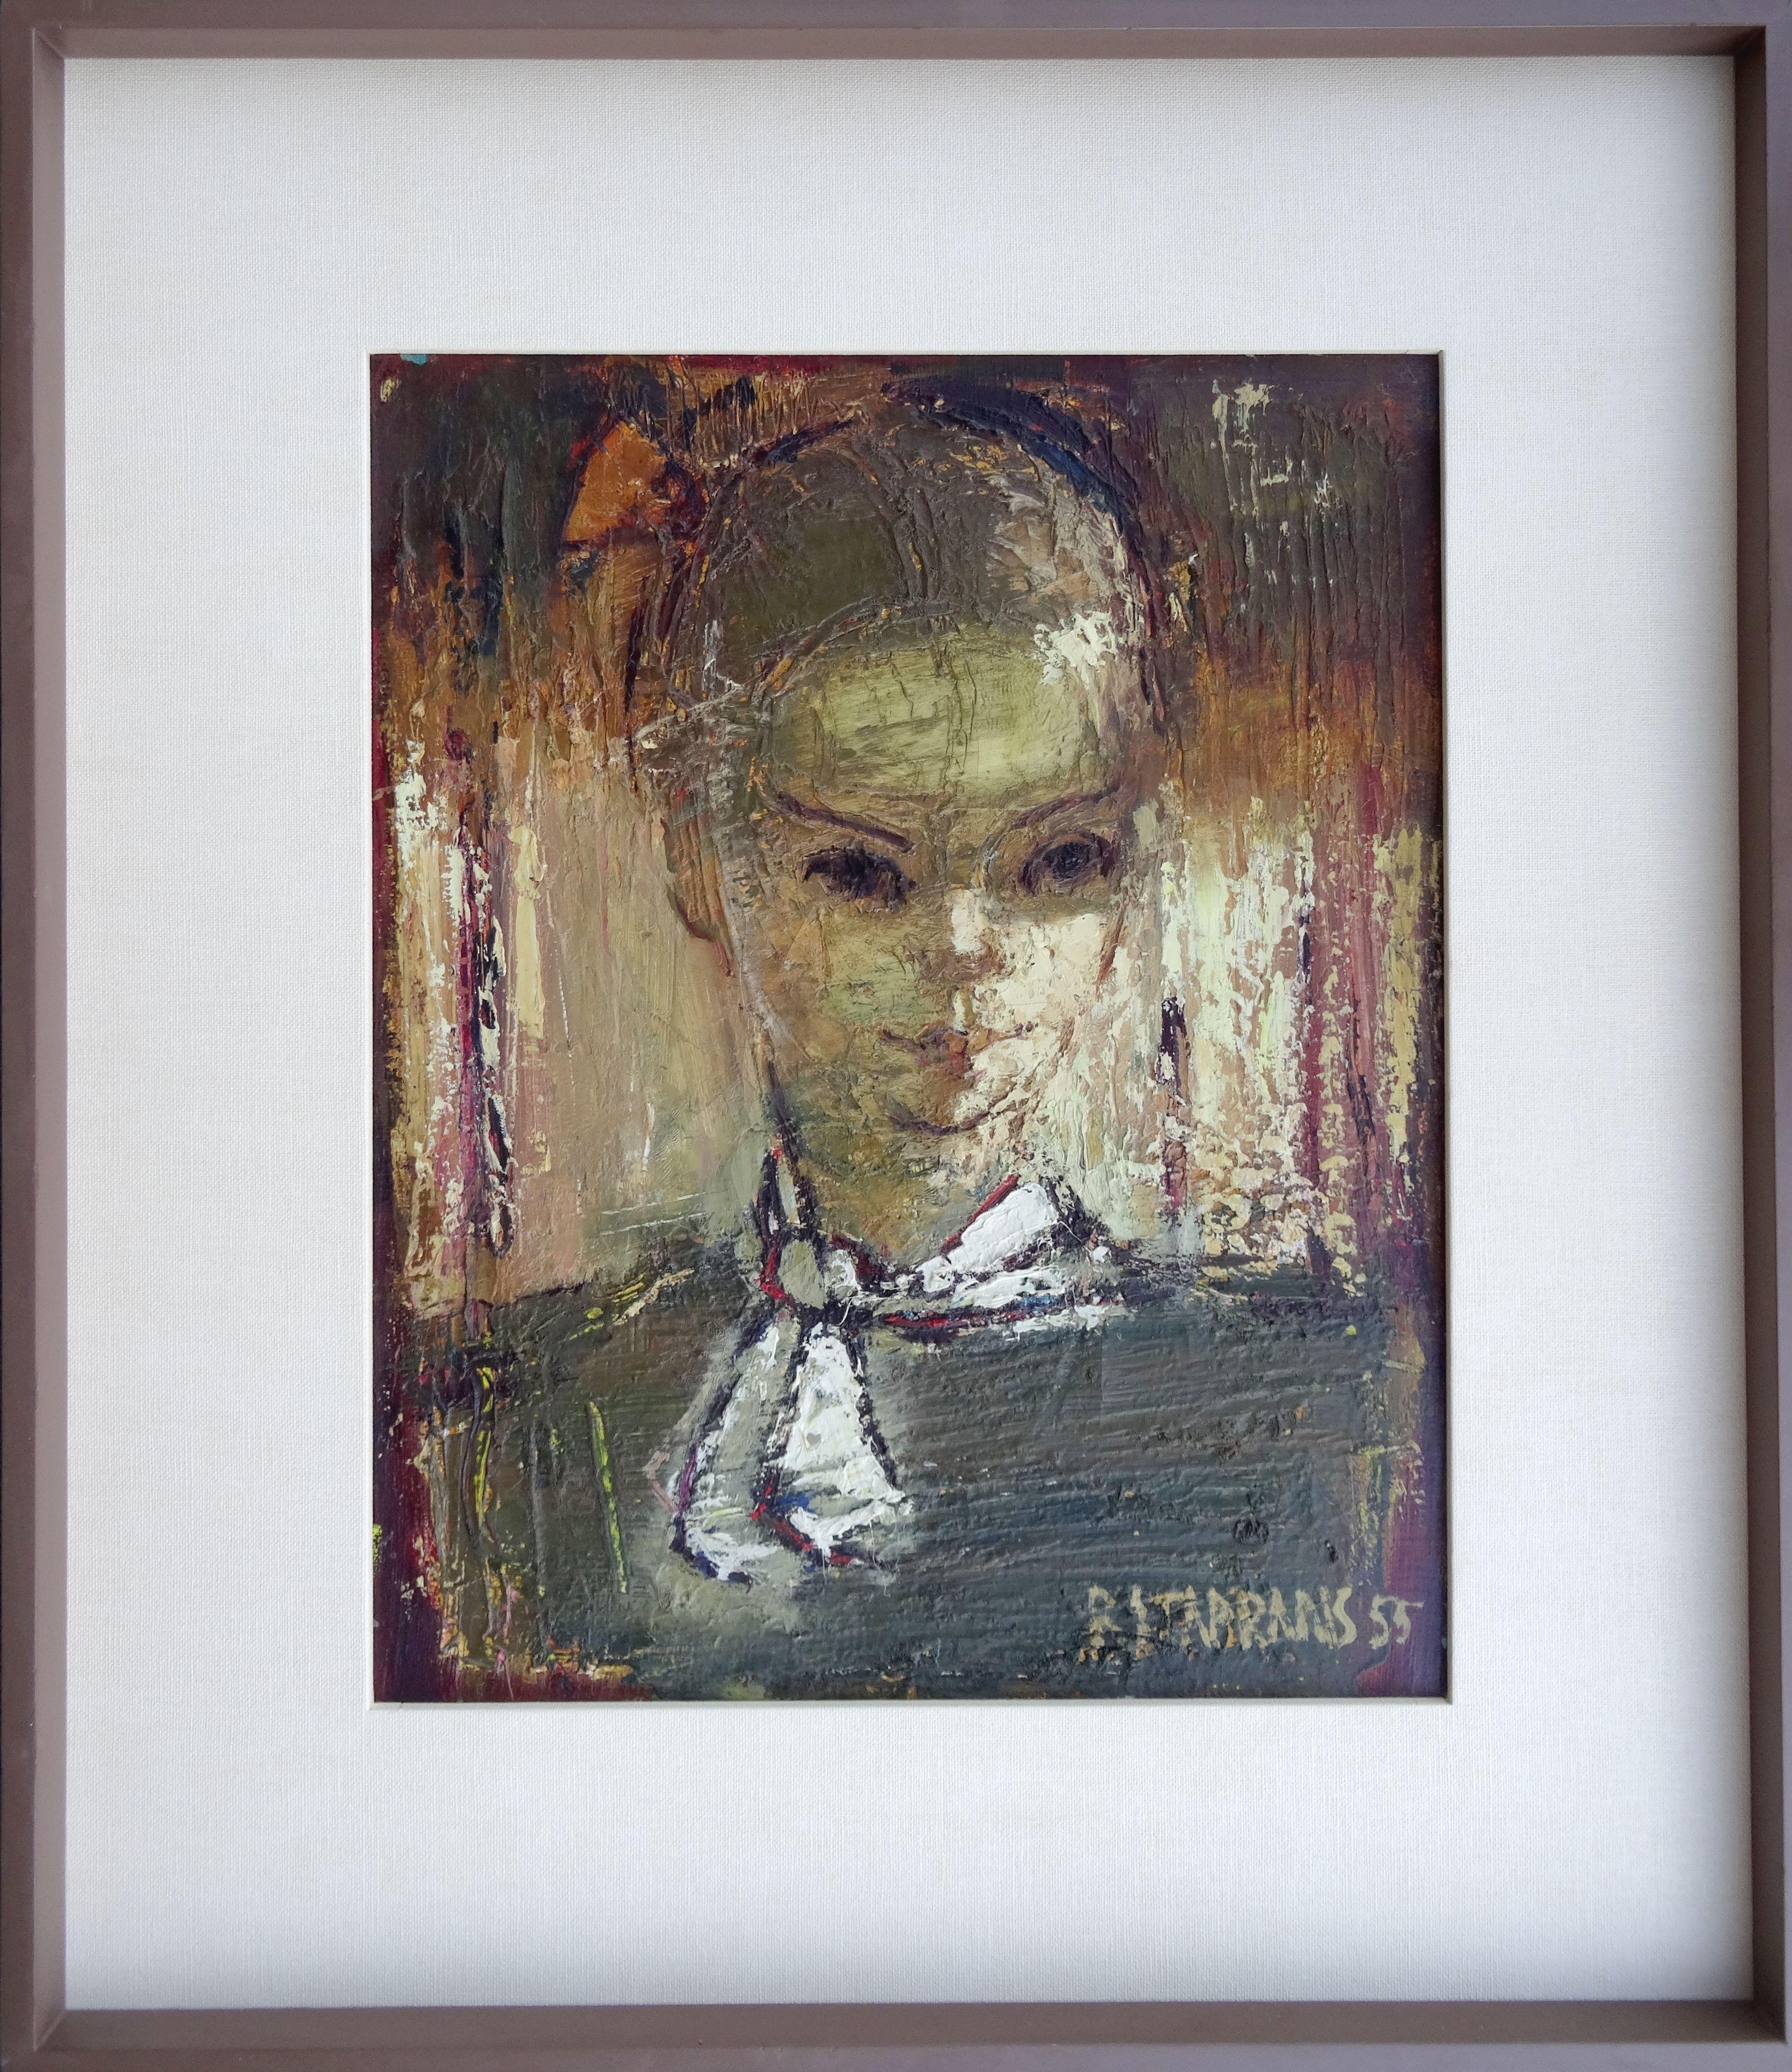 Frauenporträt, 1955, Öl auf Leinwand, 50,8 x 40,6 cm (Impressionismus), Painting, von Raimonds Staprаns 